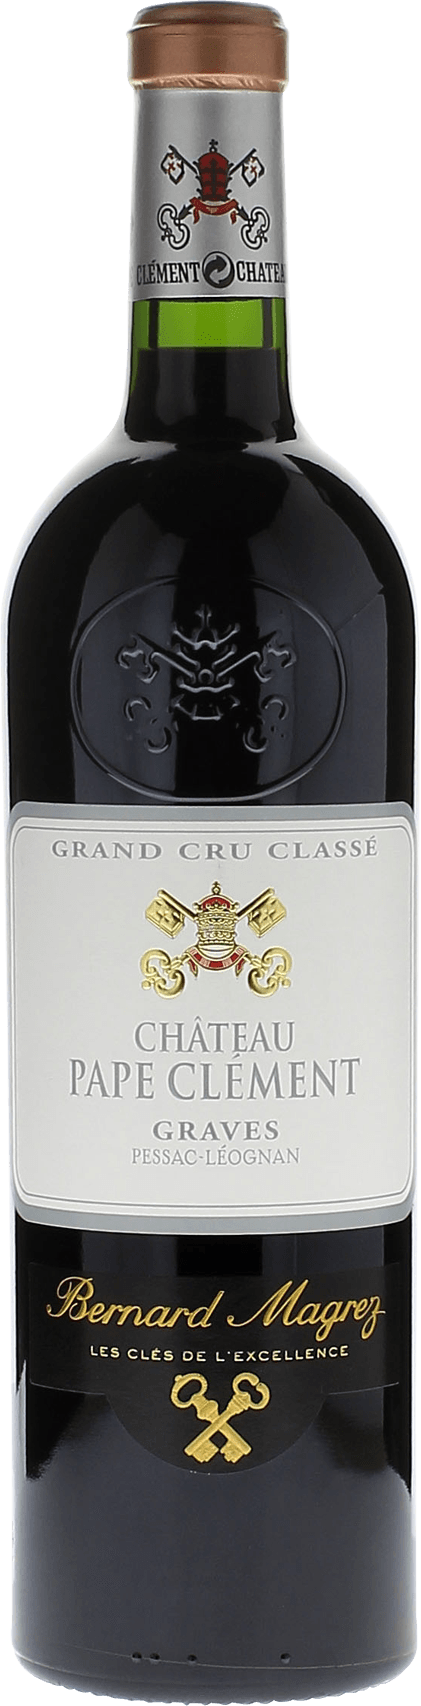 Pape clement rouge 2001 Grand Cru Class Graves, Bordeaux rouge